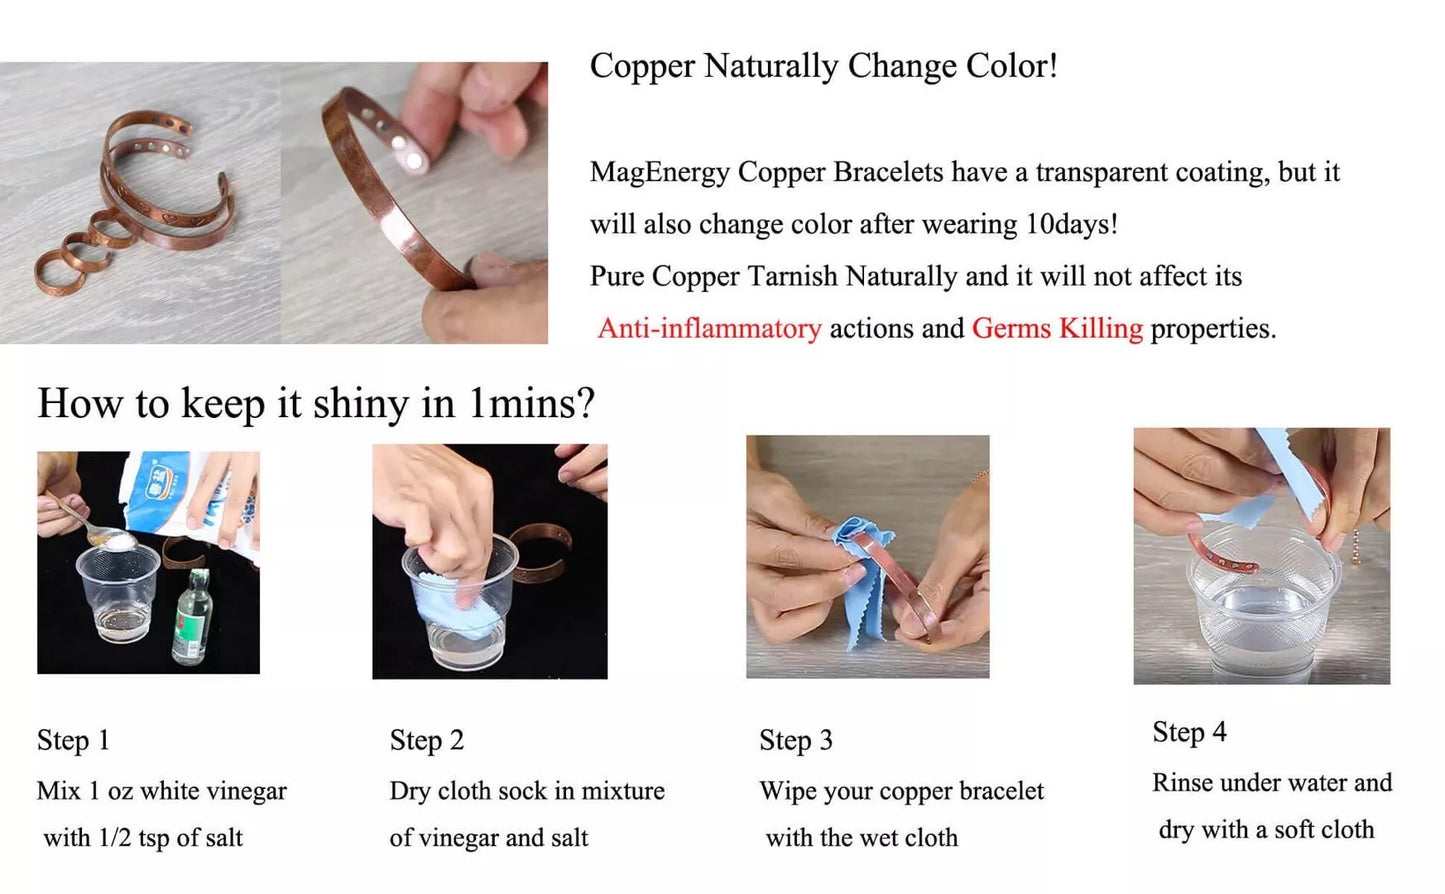 CB006A 100% Pure Copper Linked Magnetic ANKLET / Bracelet